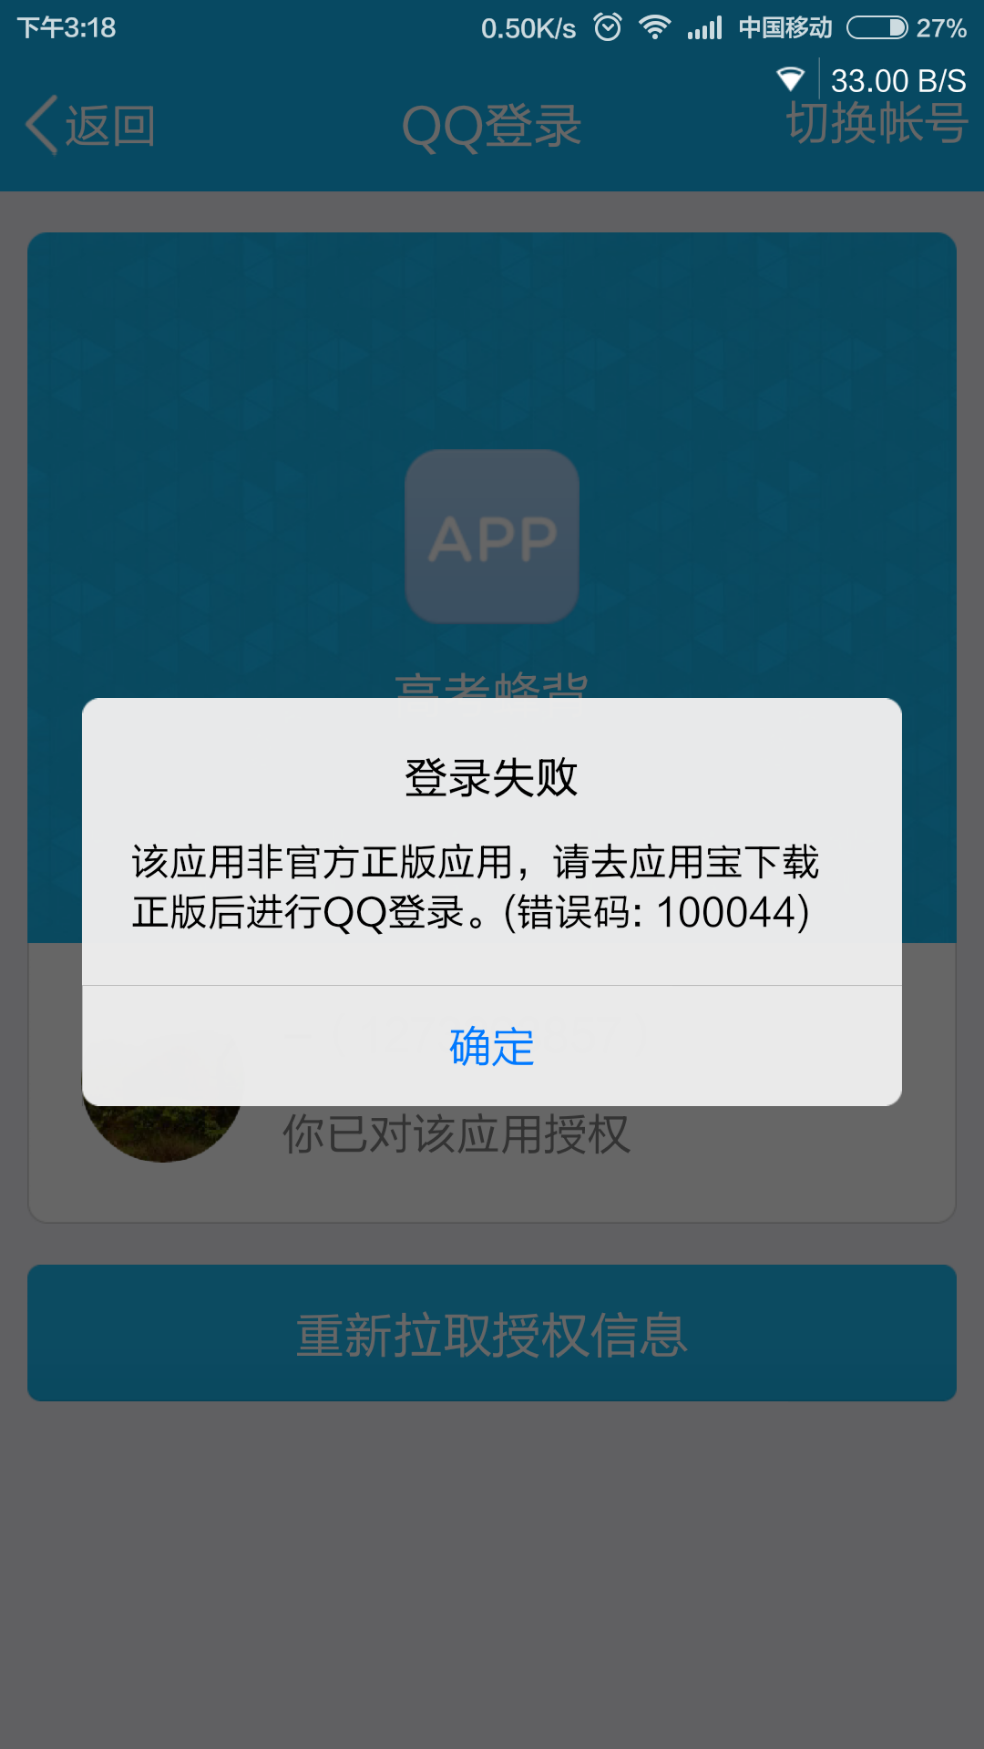 一些app使用qq快捷登陆提示 该应用非官方正